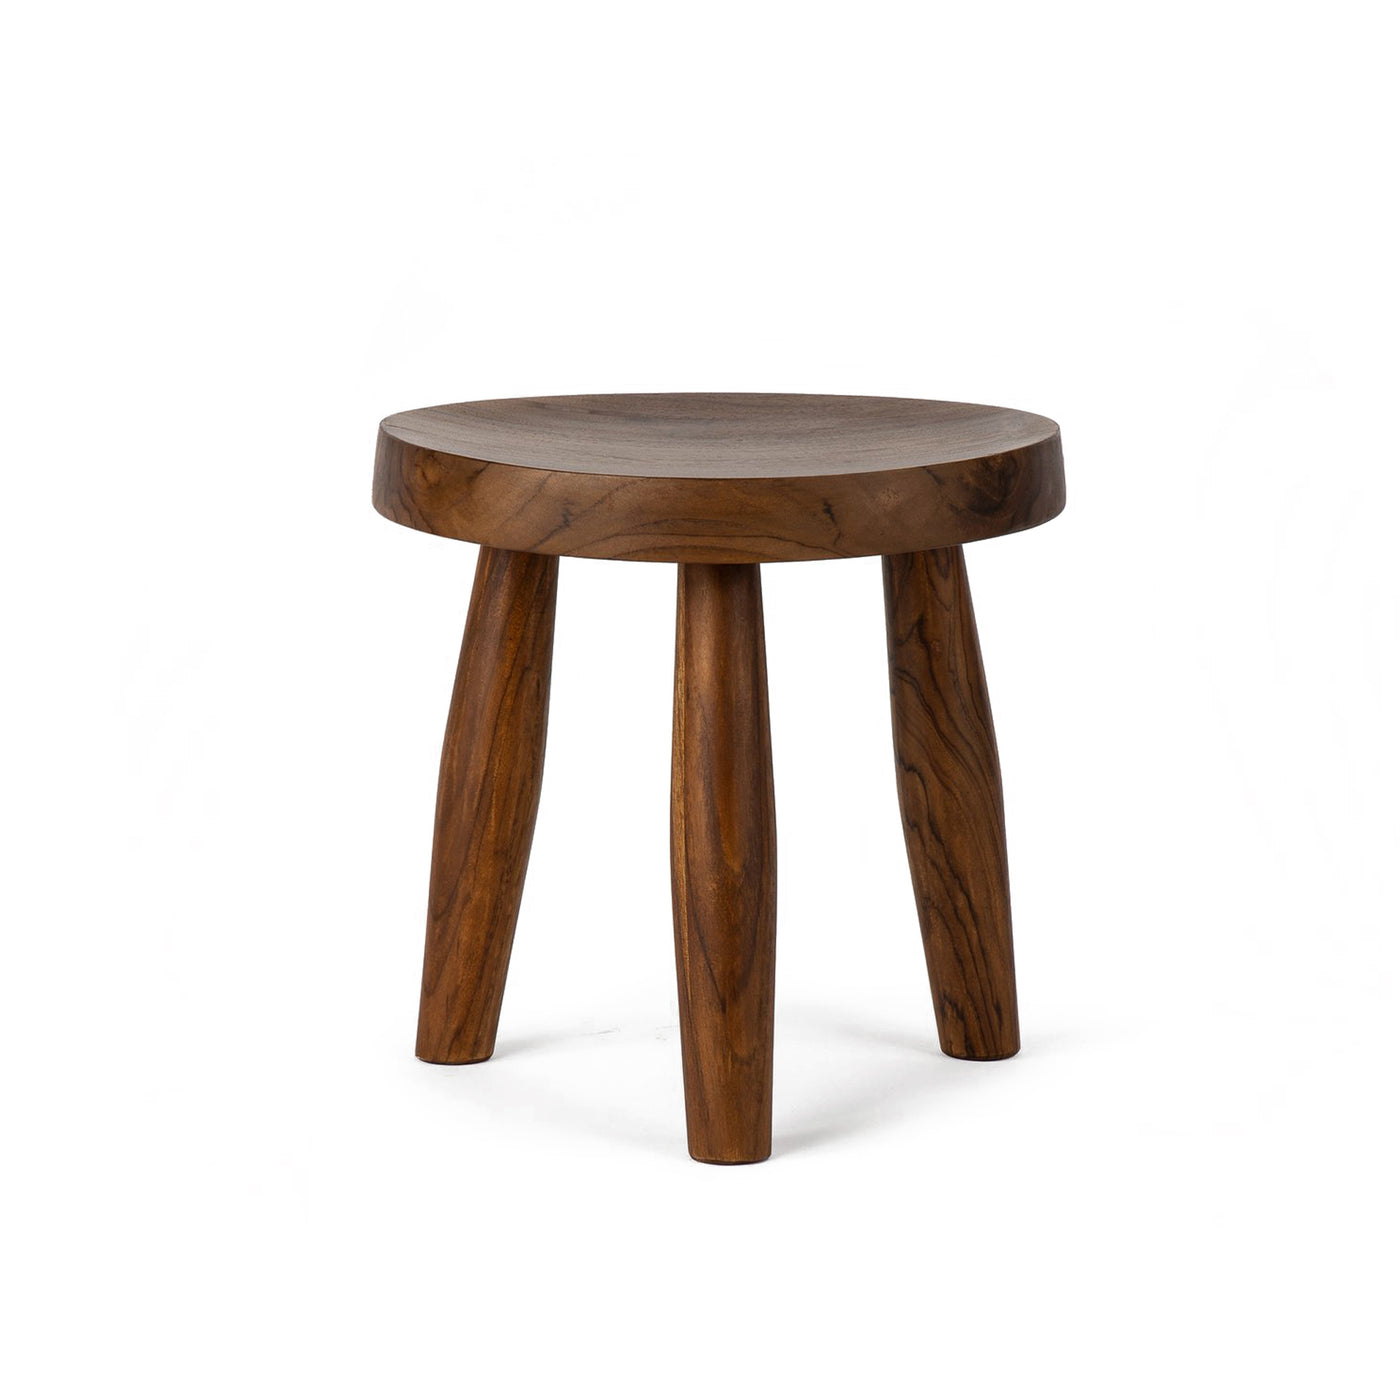 týková dřevěná stolička, minimalistický dřevěný nábytek, stolička ze dřeva, týkový nábytek, Silo Crafts